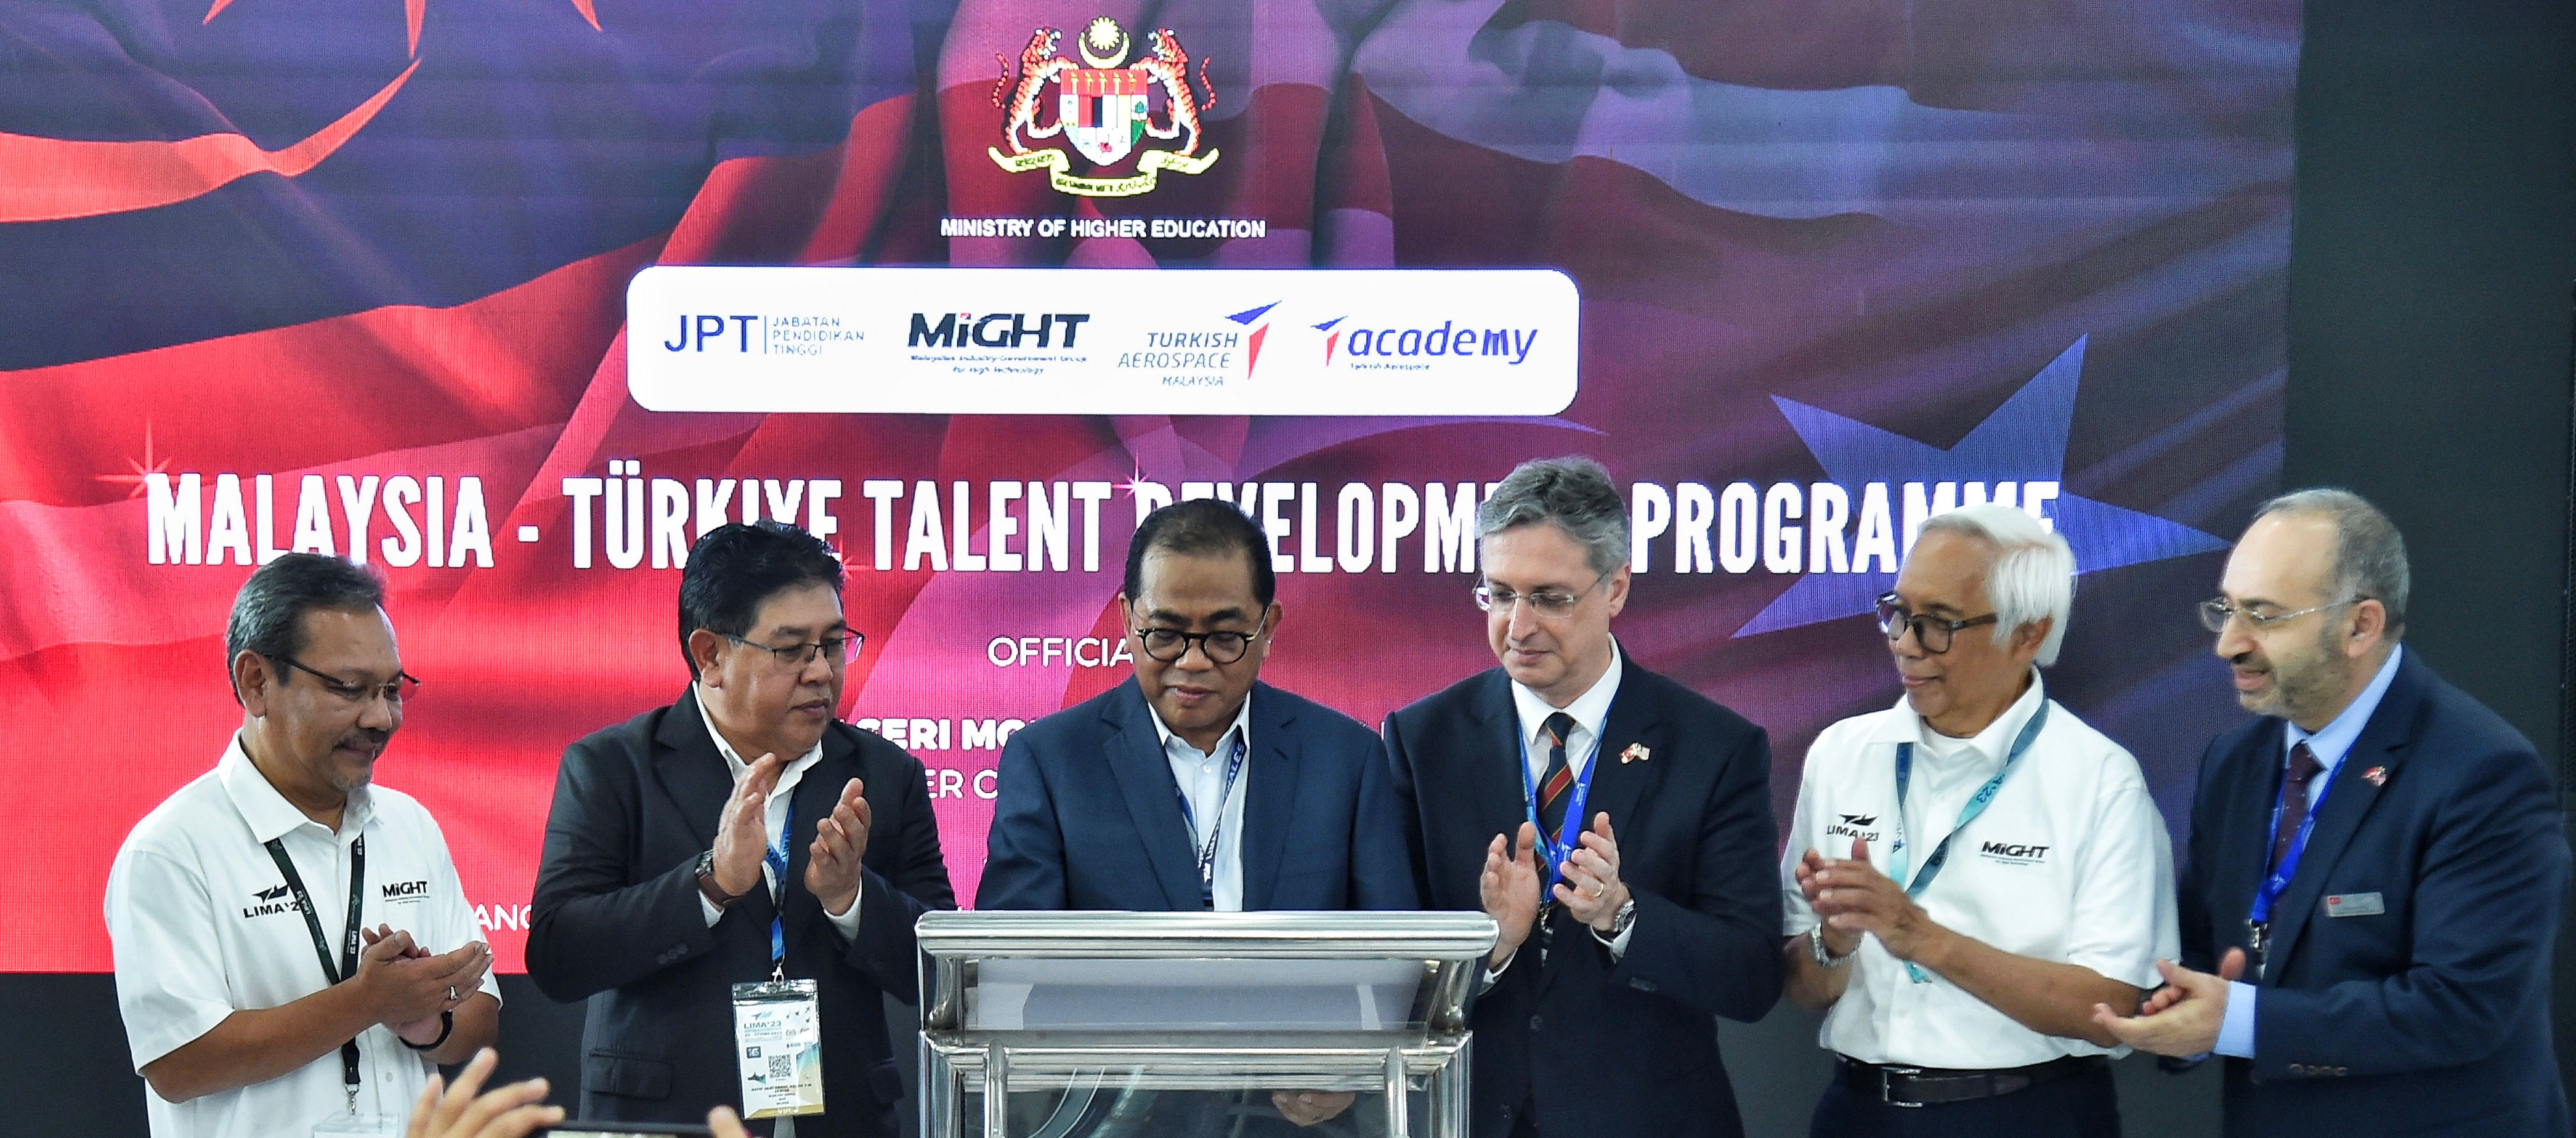 Malaysia-Turkiye Jalin Kerjasama Program Pembangunan Bakat Aeroangkasa